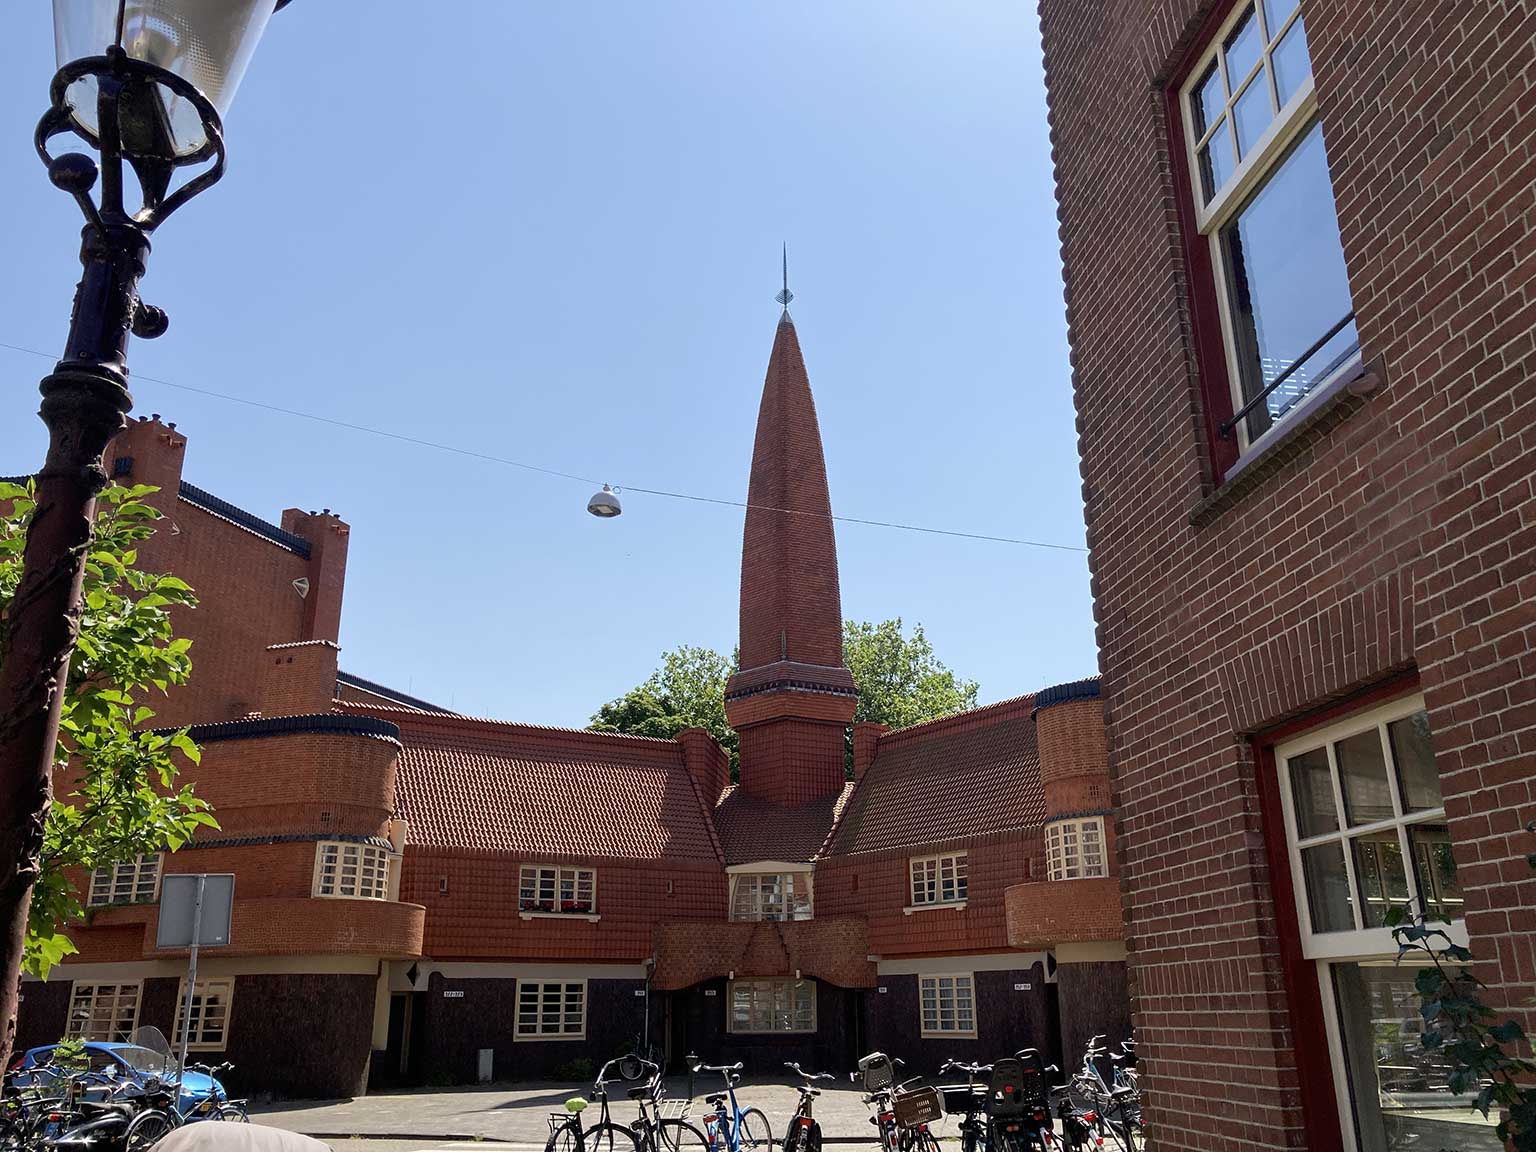 Huizenblok Het Schip, Amsterdam, gezien vanaf de overkant van de Hembrugstraat